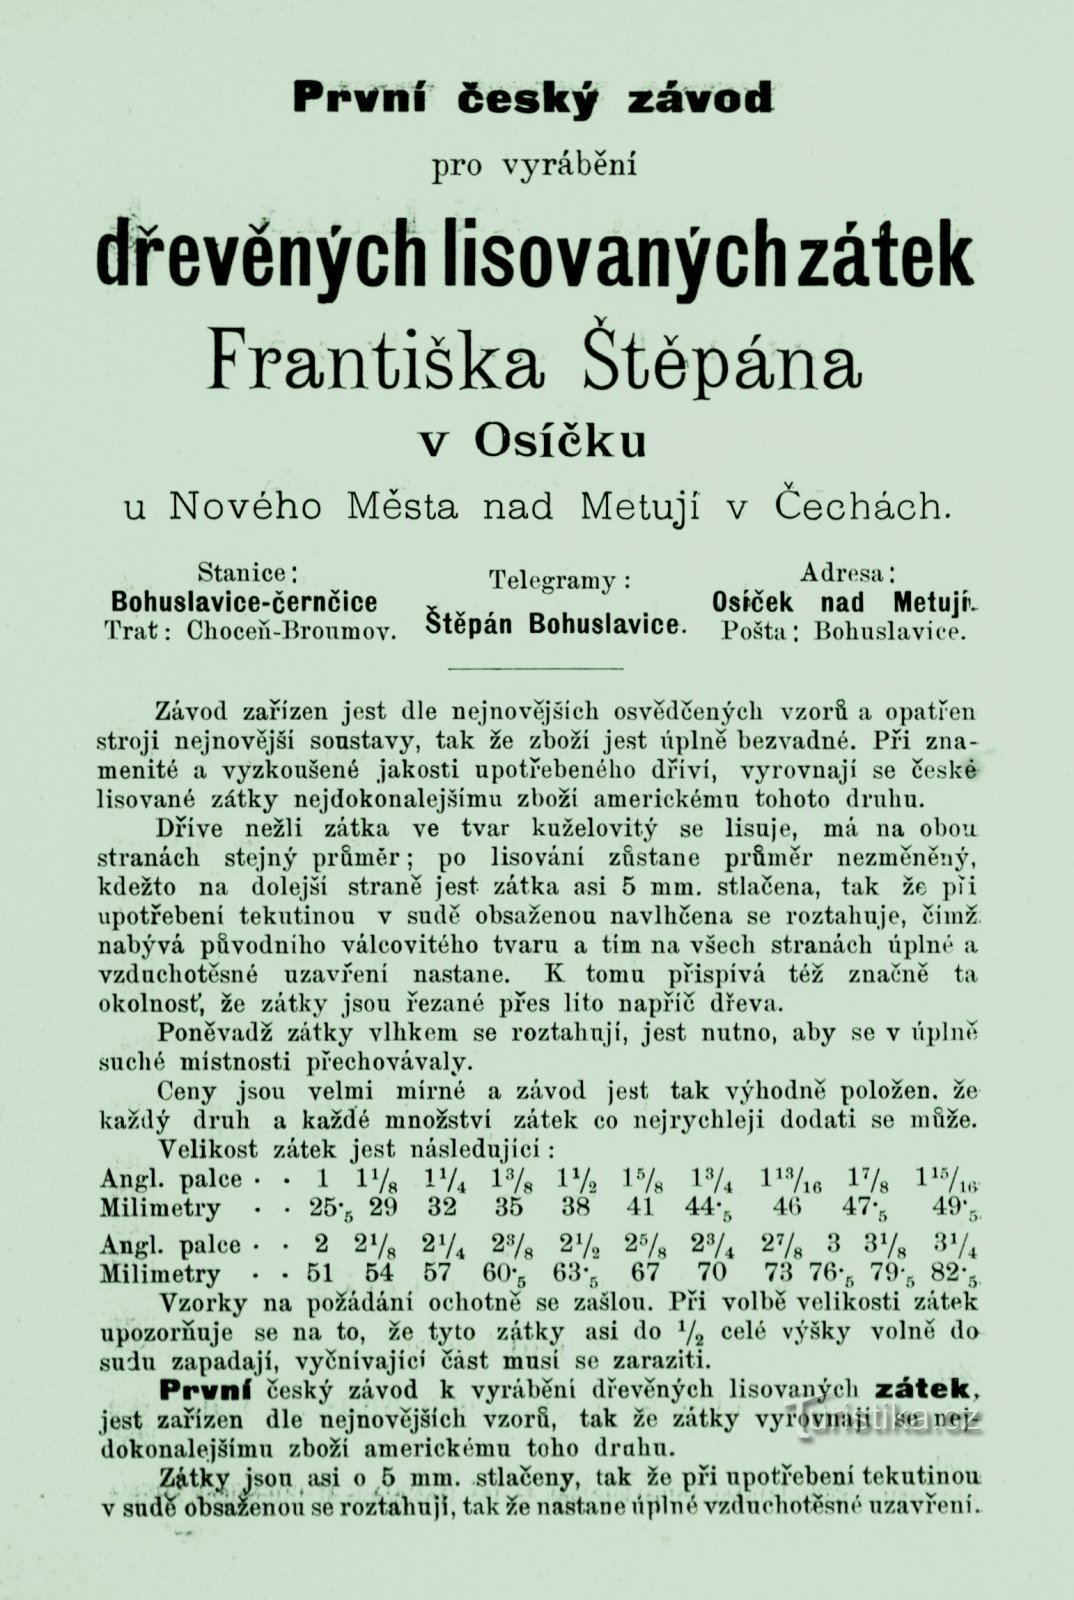 Quảng cáo thời kỳ của cối xay František Štěpán từ năm 1893